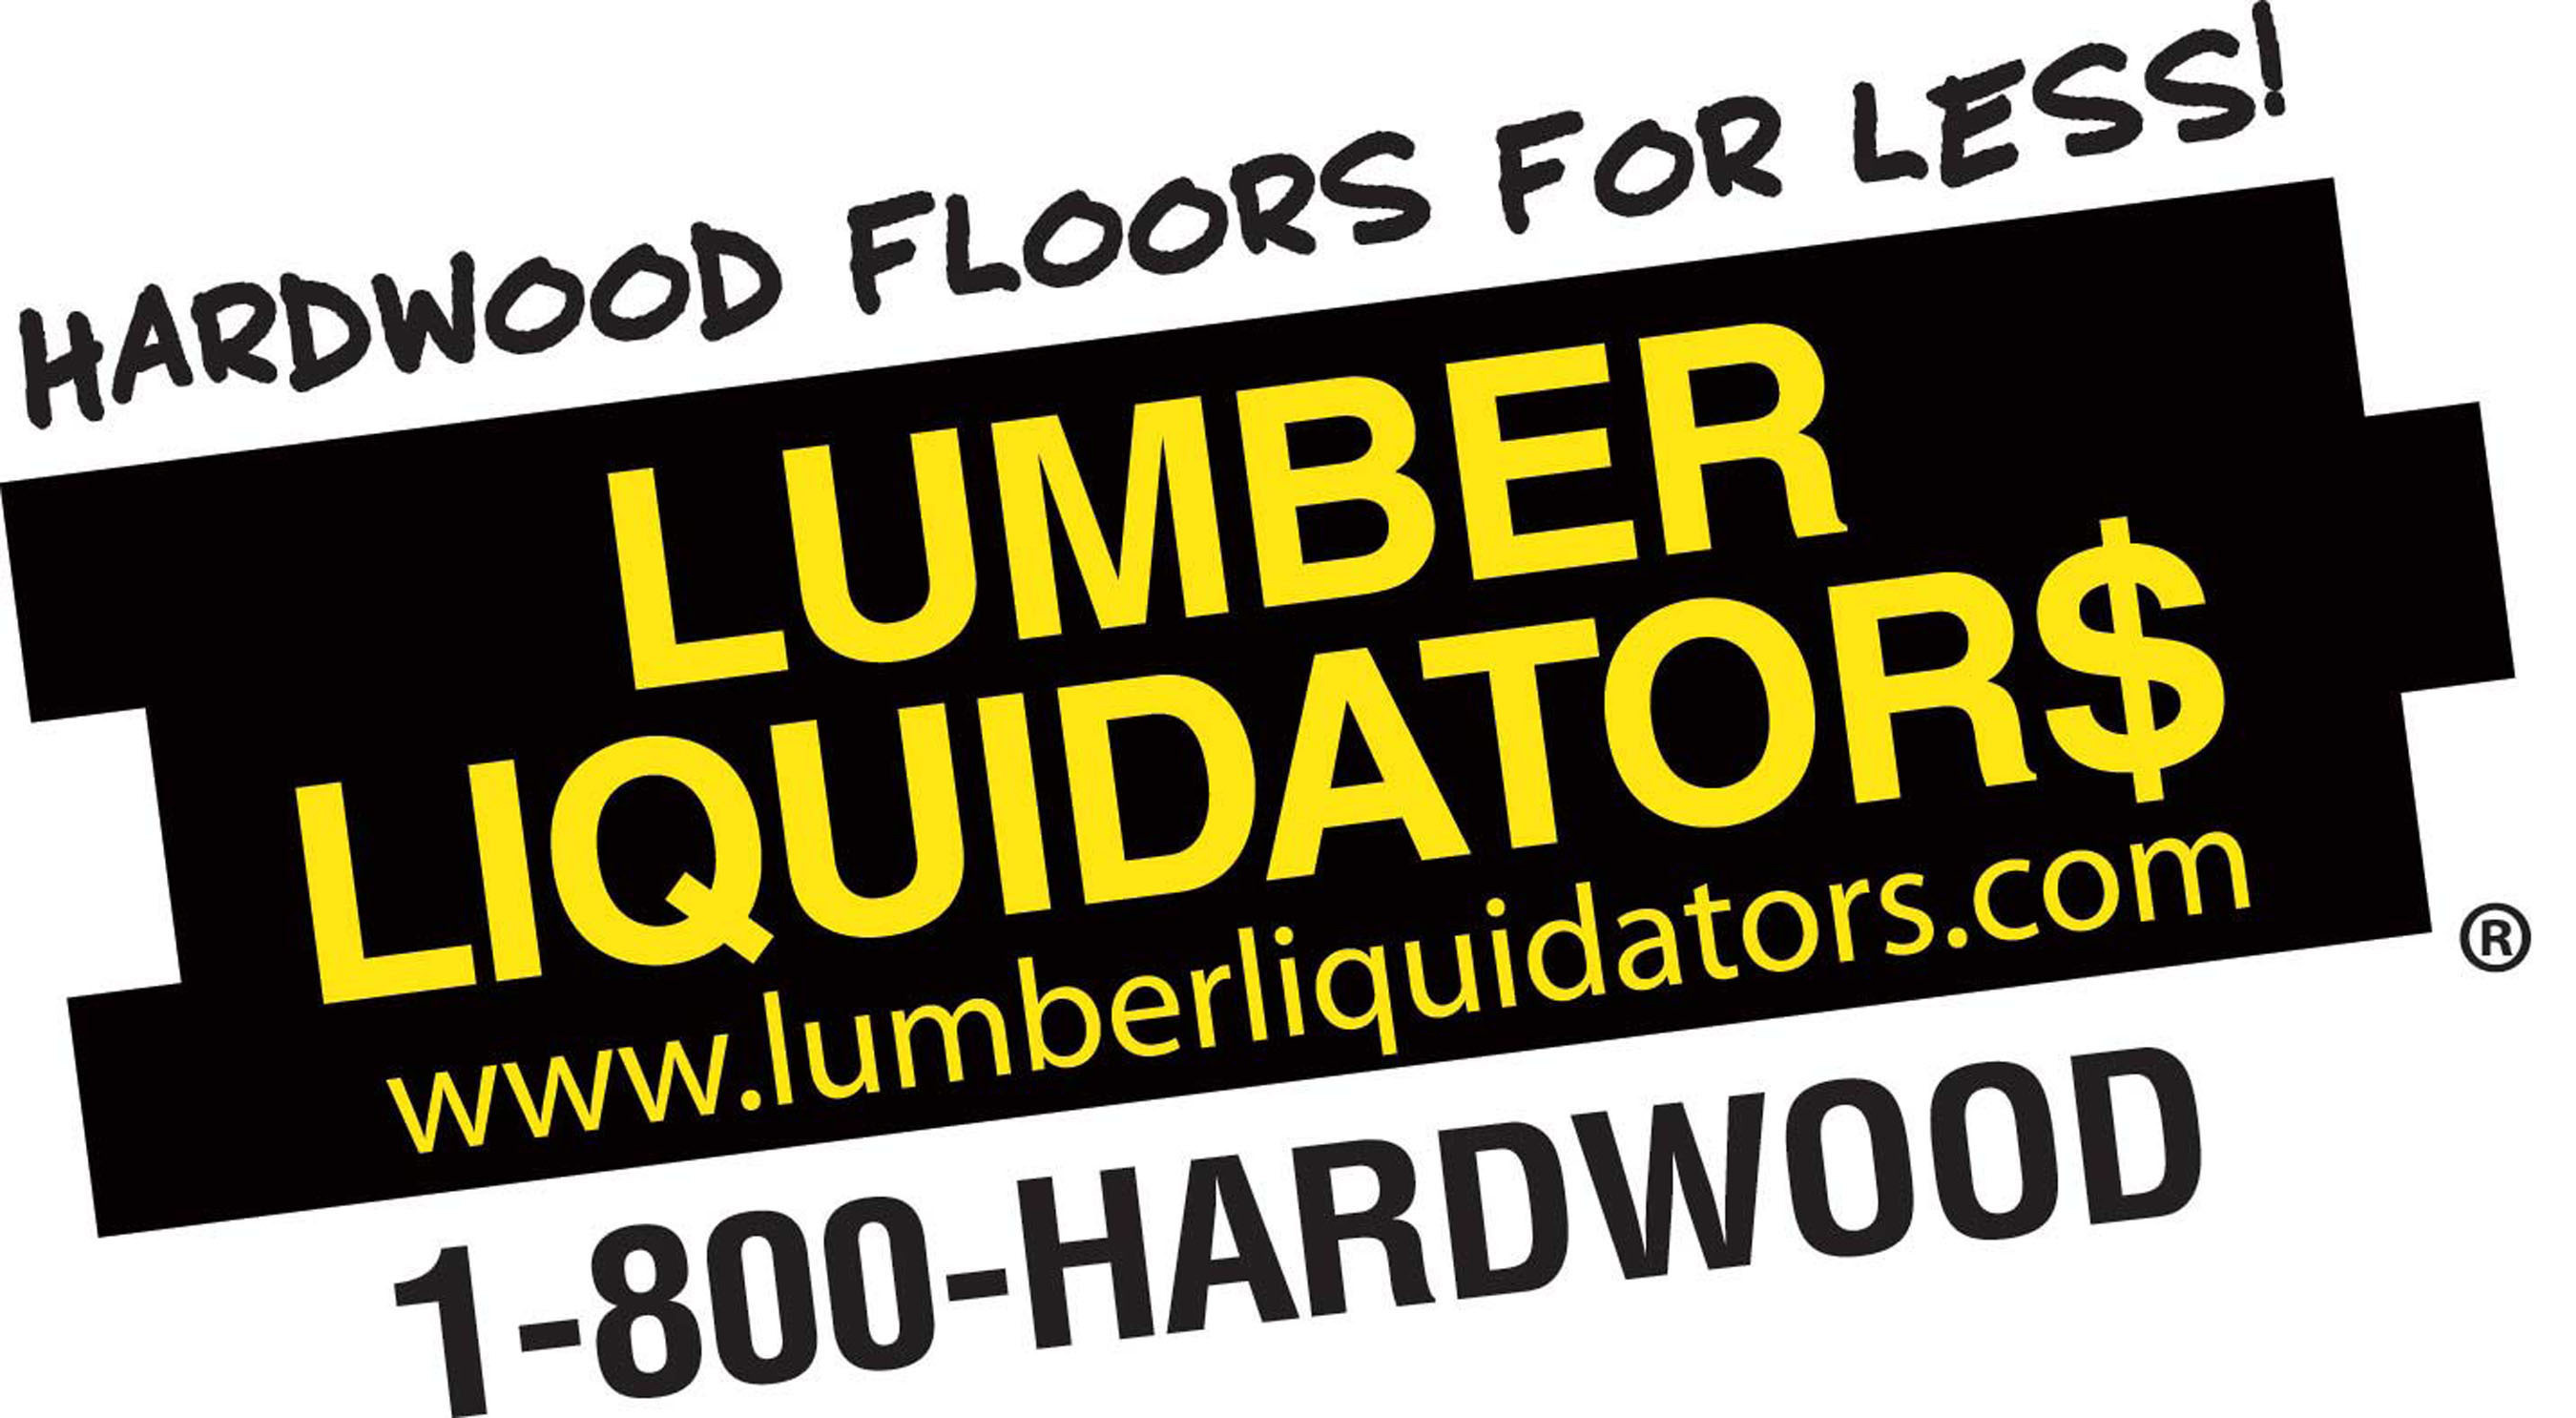 HGTV Featuring Lumber Liquidators Flooring In HGTV Dream Home 2016